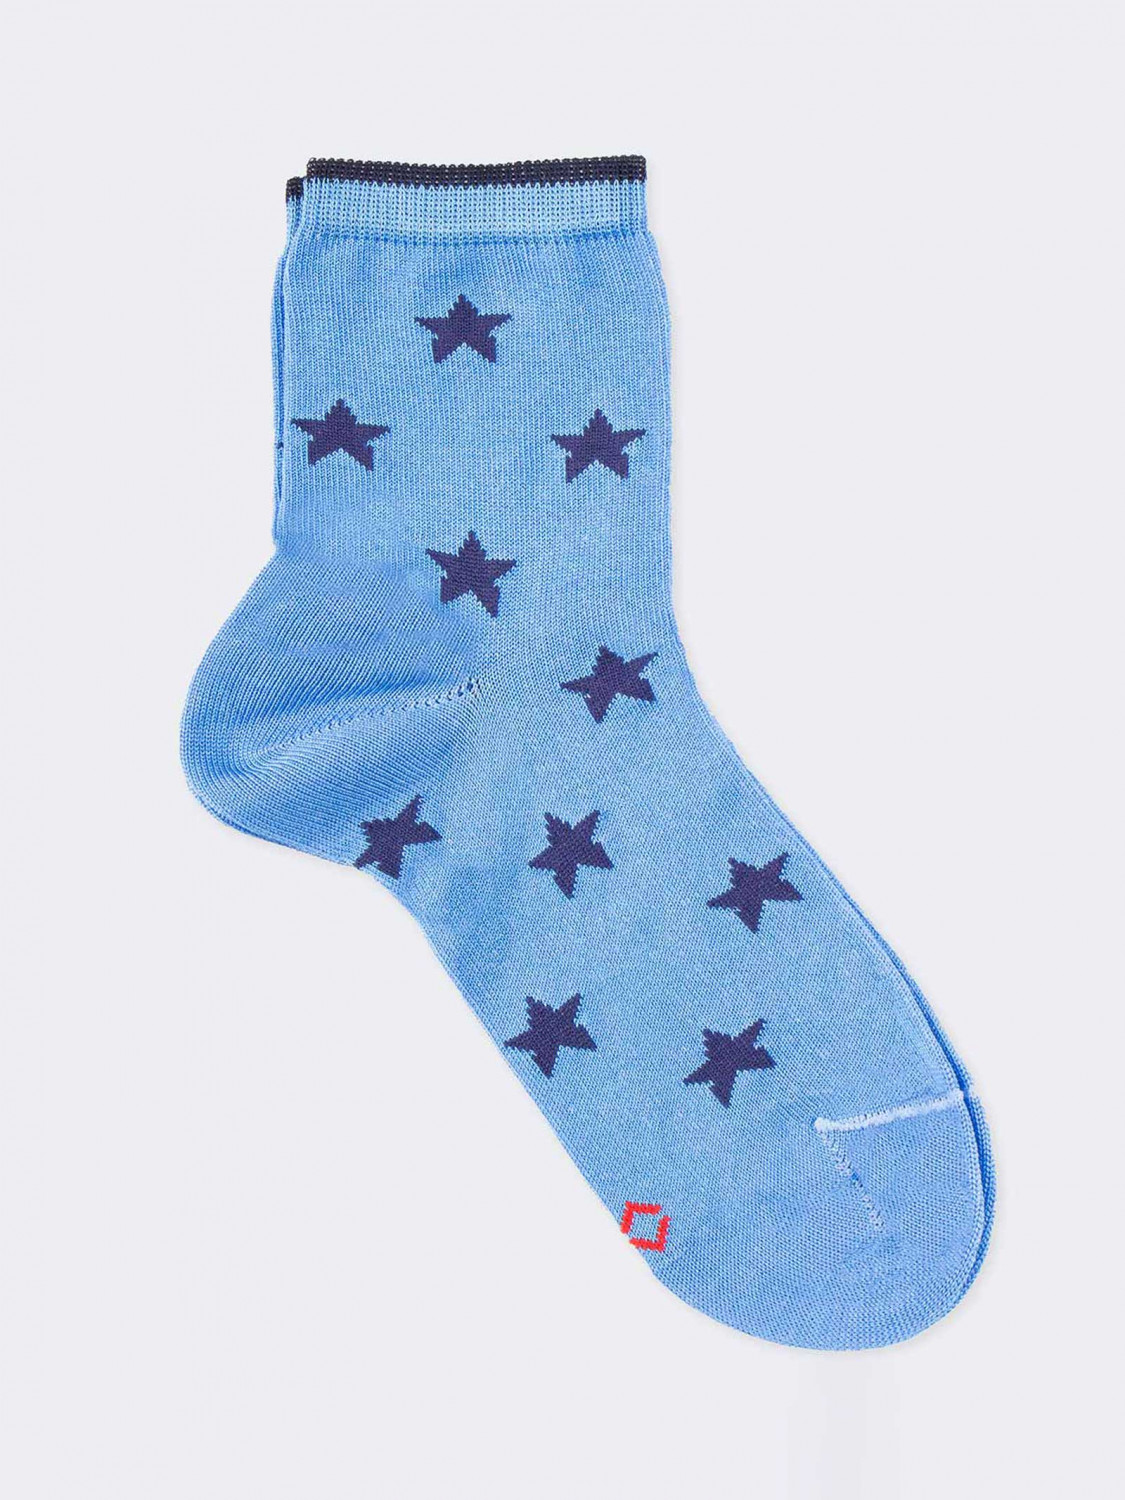 Stars pattern Kids Crew socks